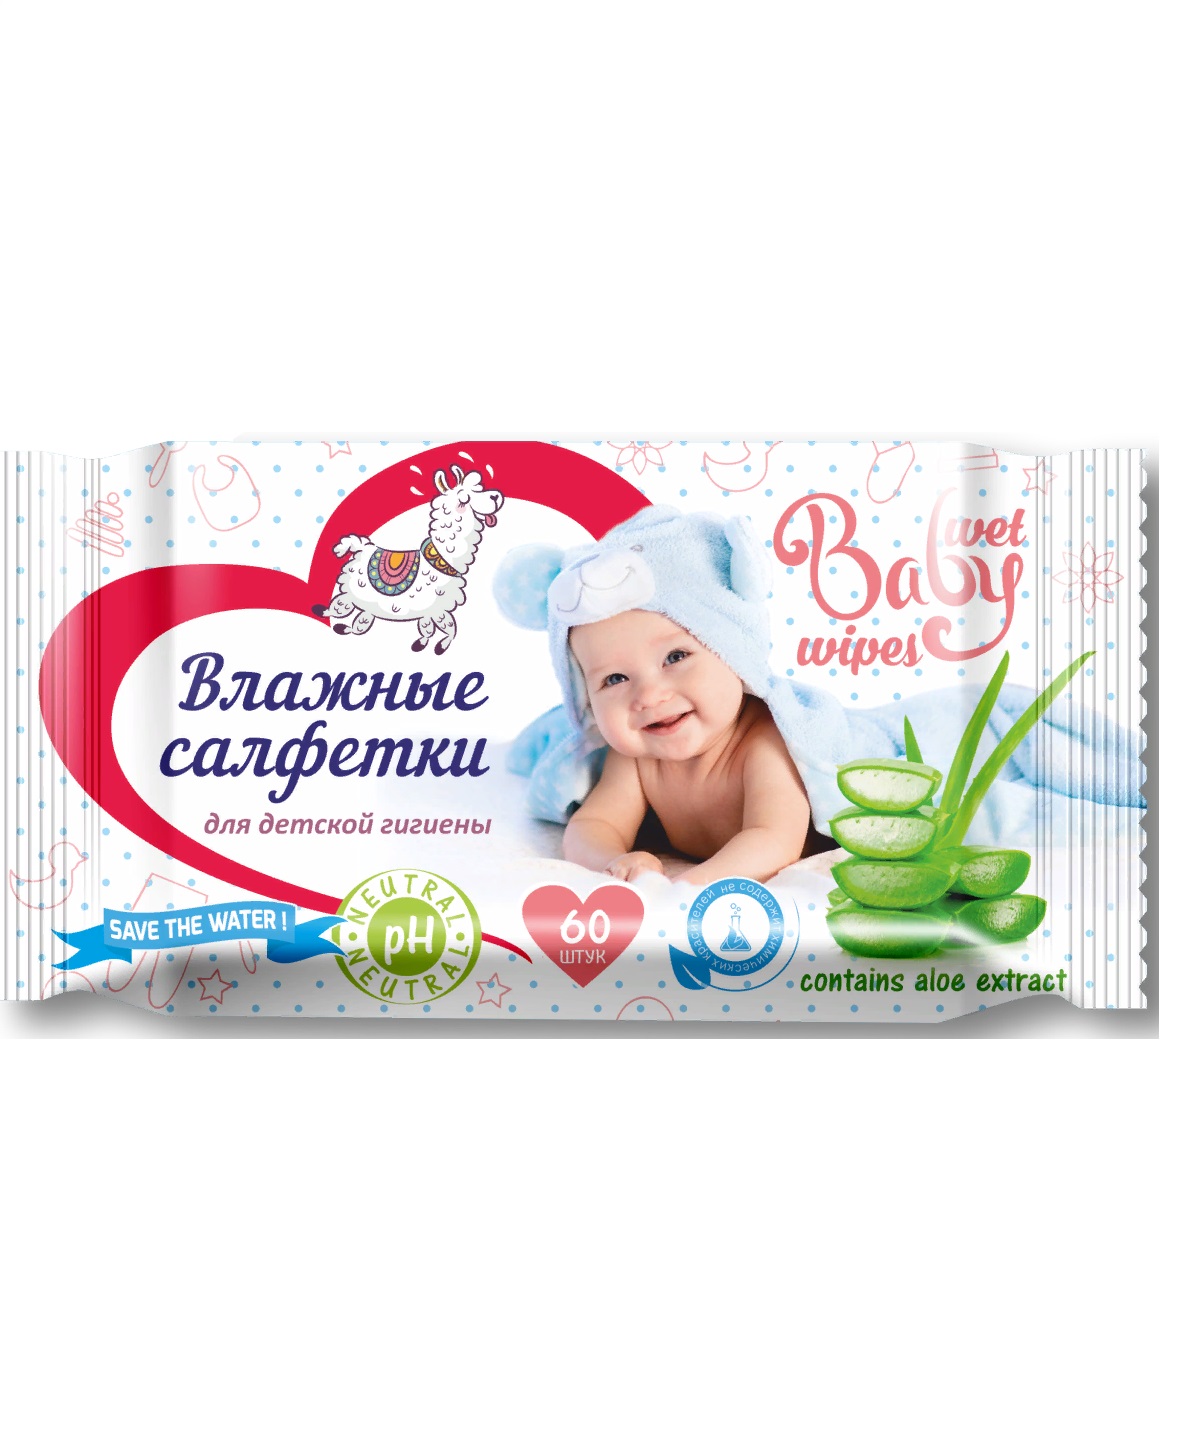 Салфетки  Vestar,детские,с экстрактом алоэ 60 шт (5 упаковок)